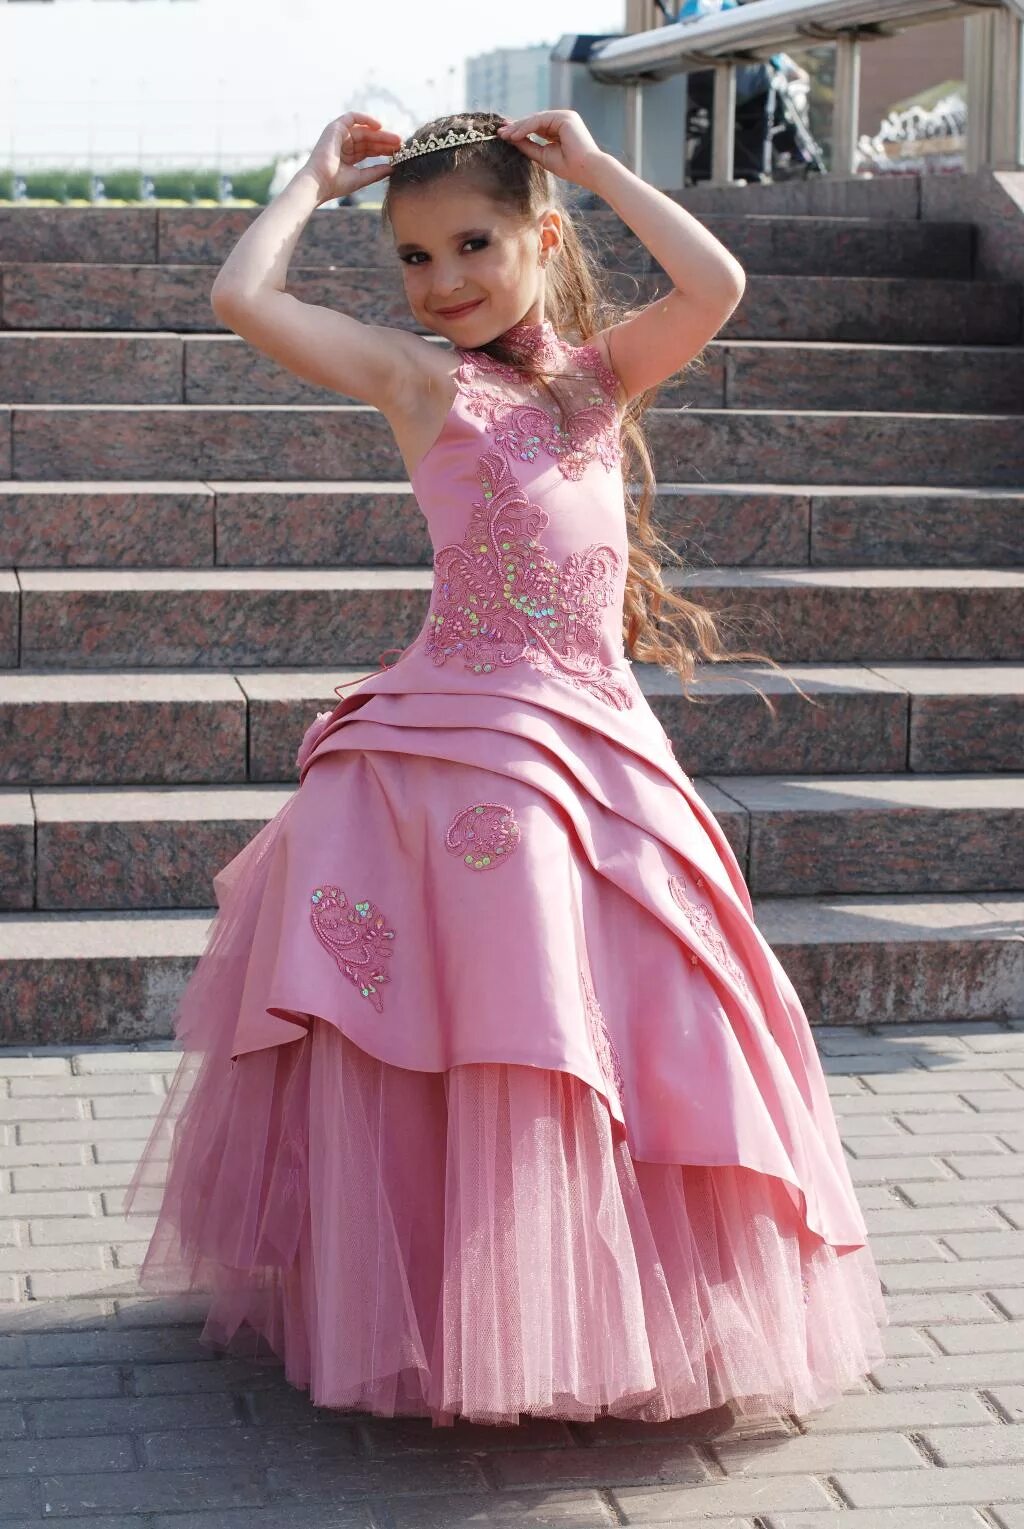 Самой маленькой принцессе. Бал маленьких принцесс. Маленькая принцесса. Принцесса 12 лет. «Моя маленькая принцесса», 2011 год.